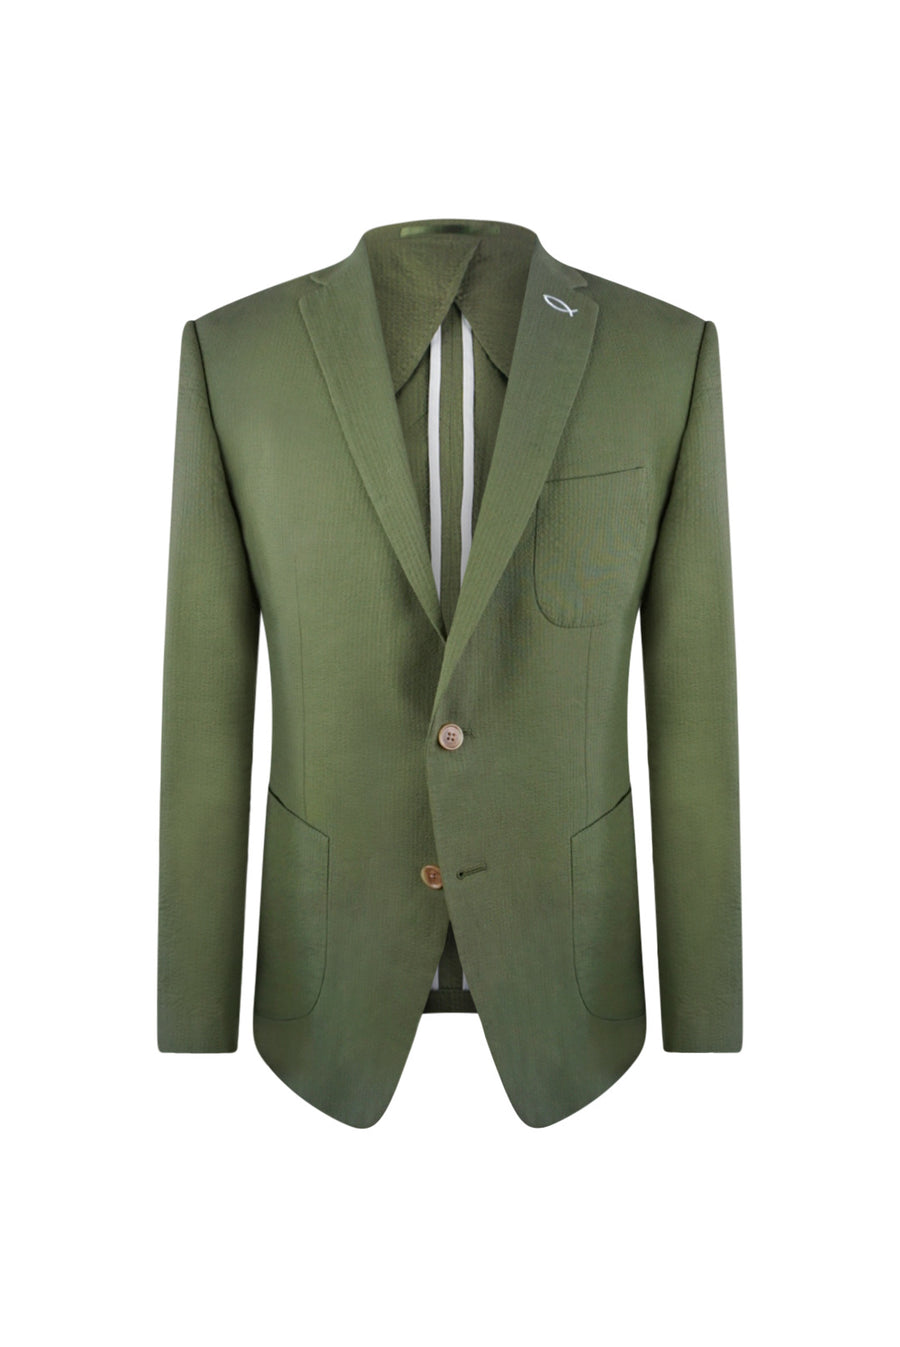 Caiman Green Seersucker Suit Jacket